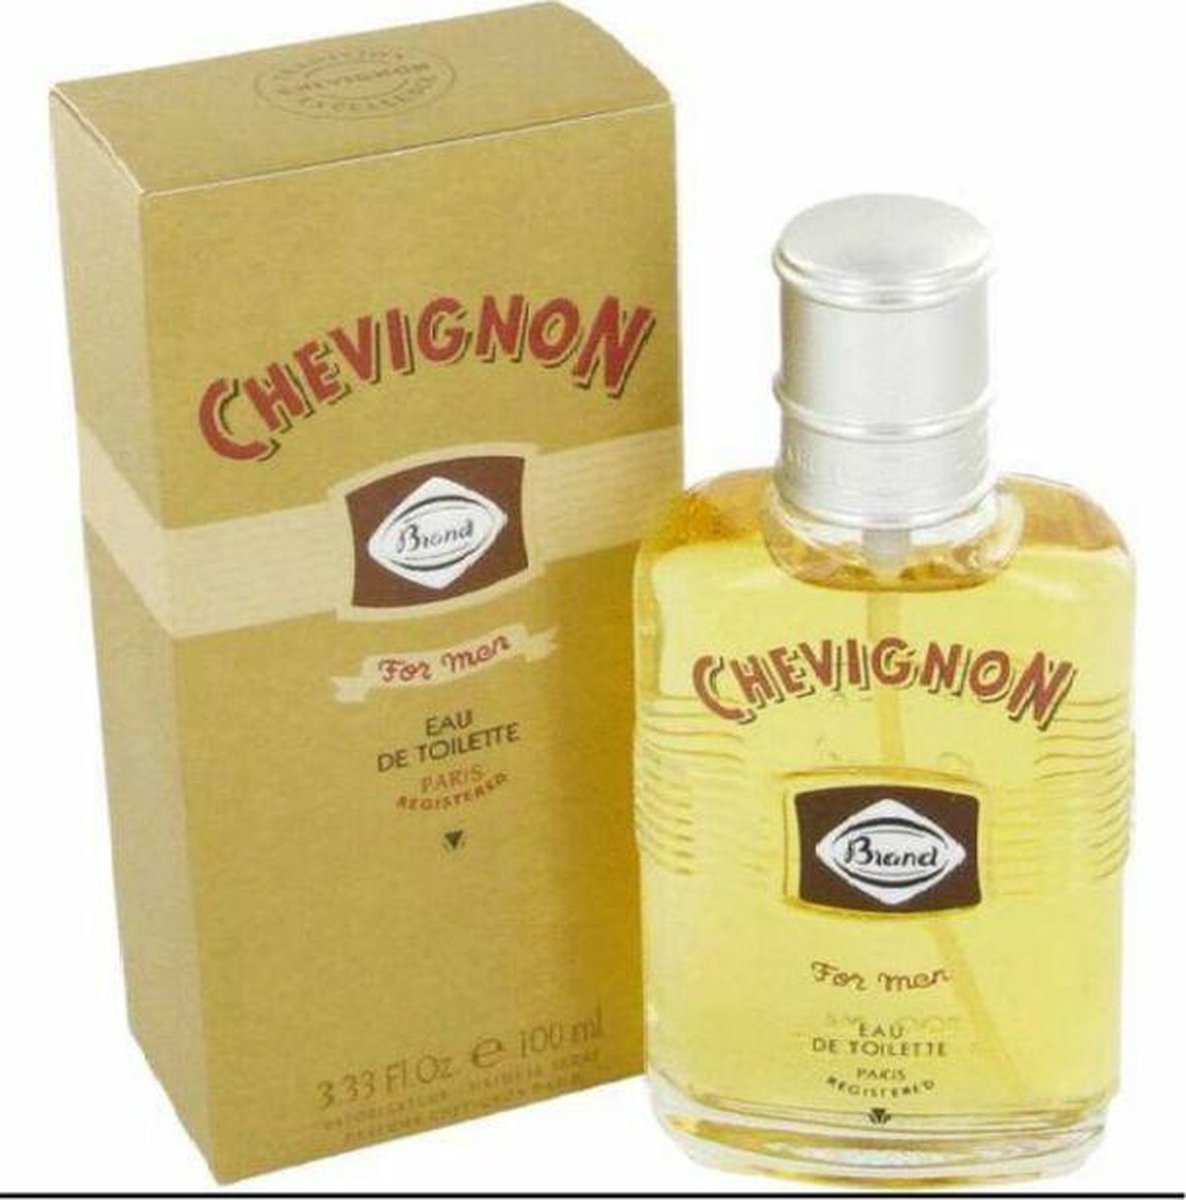 Chevignon For Men 100ml eau de toilette spray